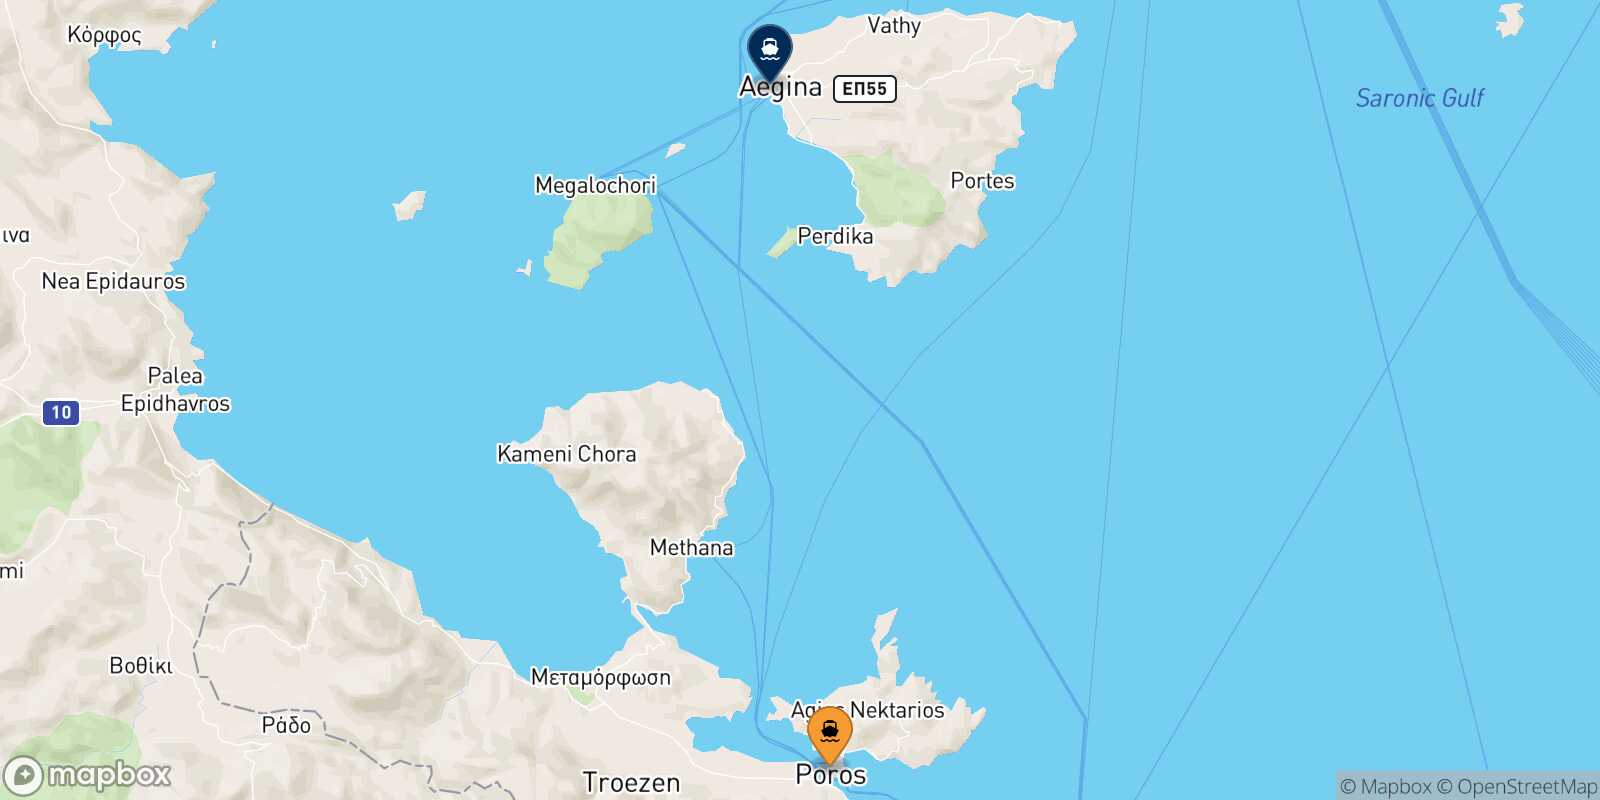 Poros Aegina route map